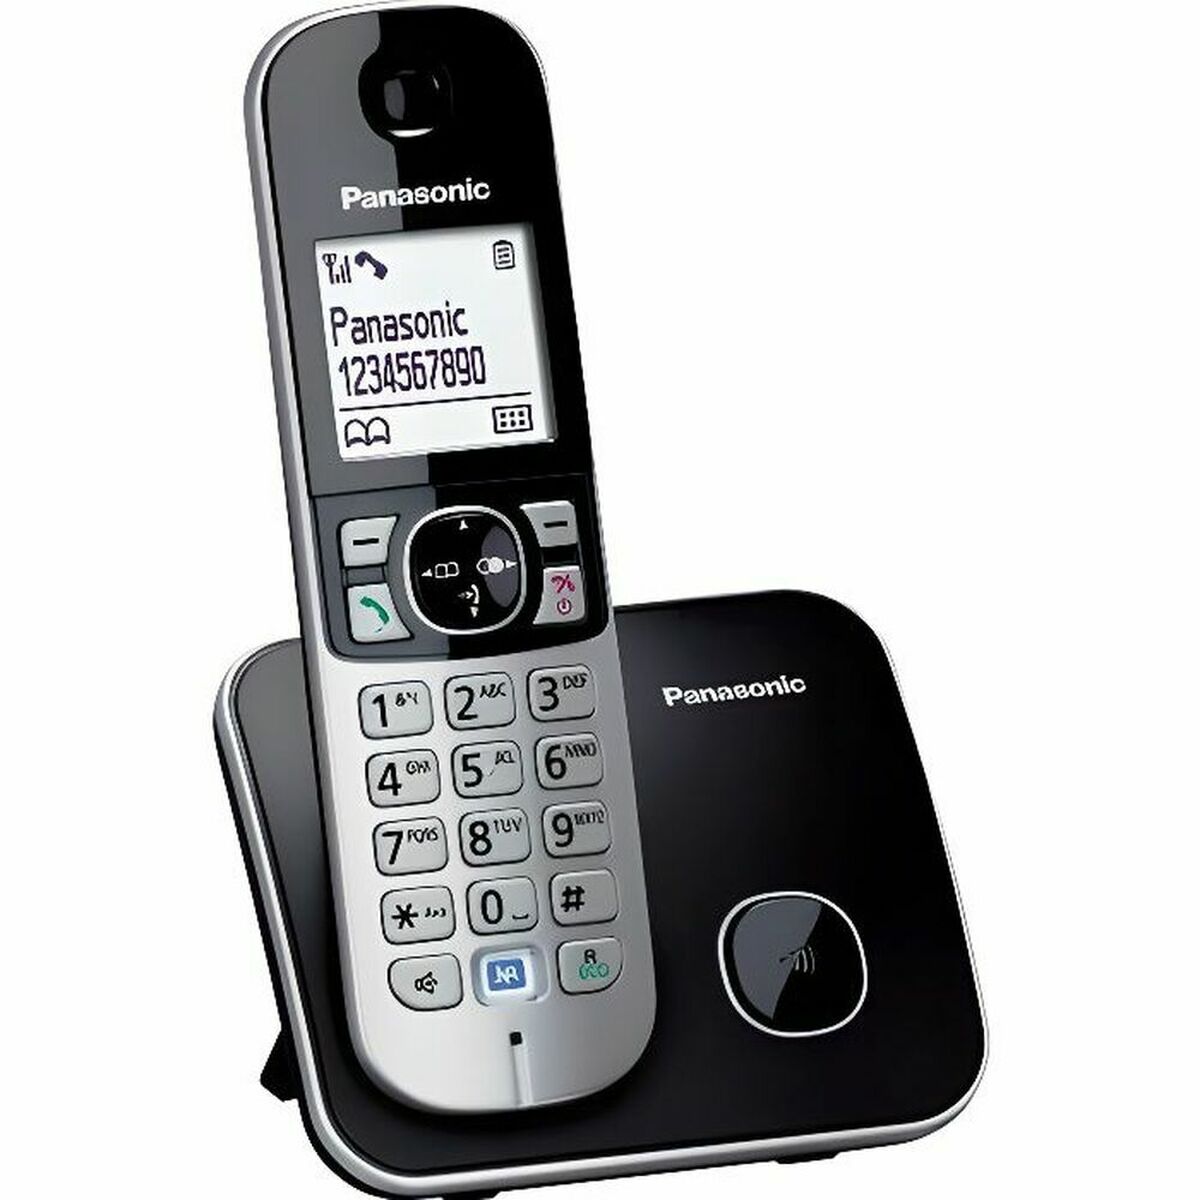 Trådløs telefon Panasonic KX-TG6811FRB Hvid Sort Sort/Sølvfarvet